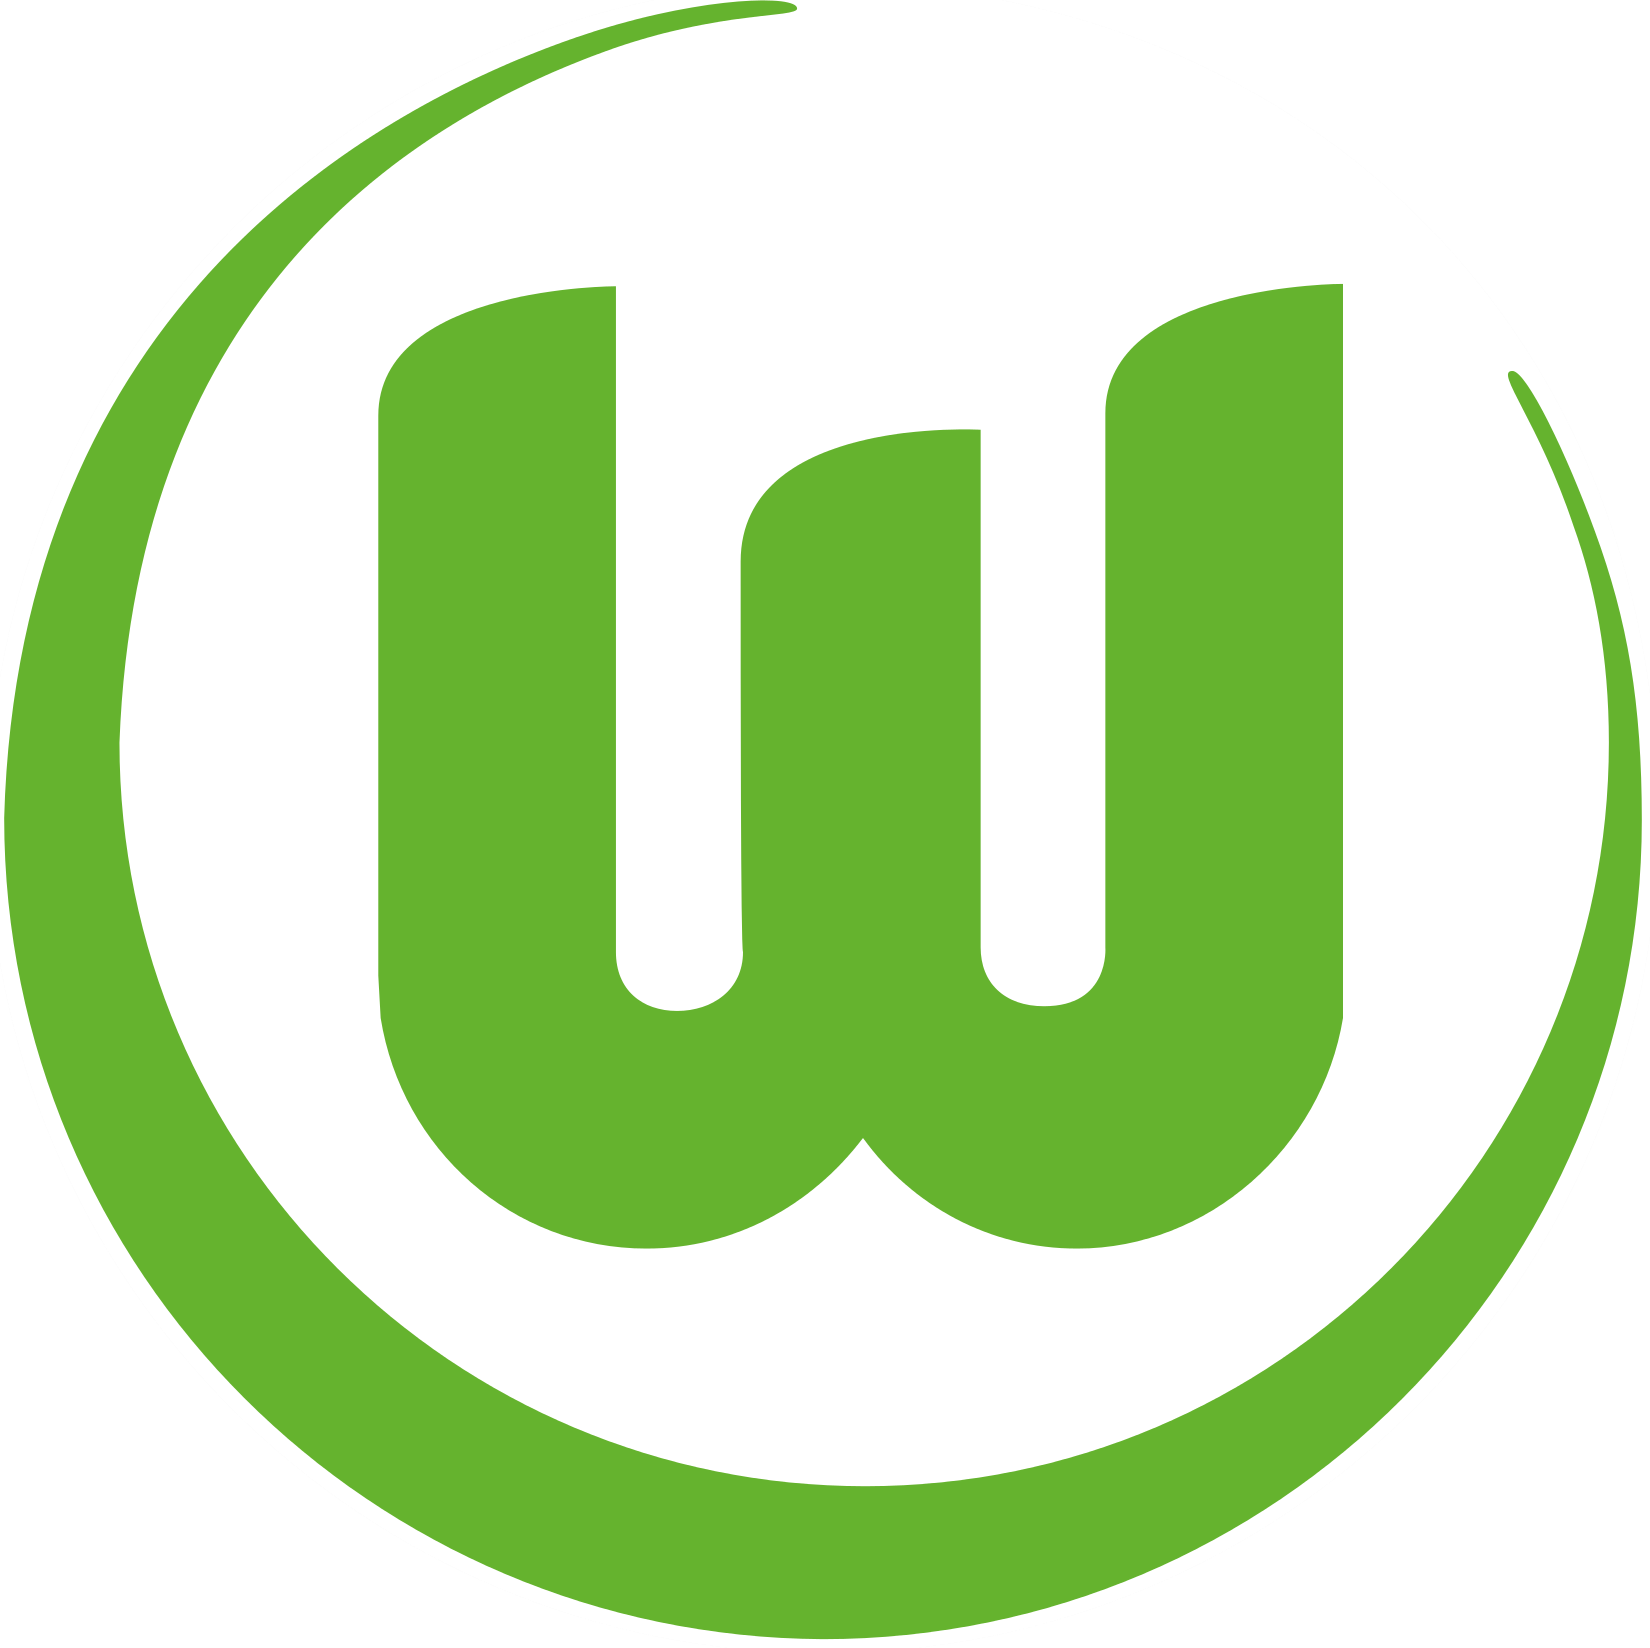 Wappen VfL Wolfsburg 1945 diverse  89595